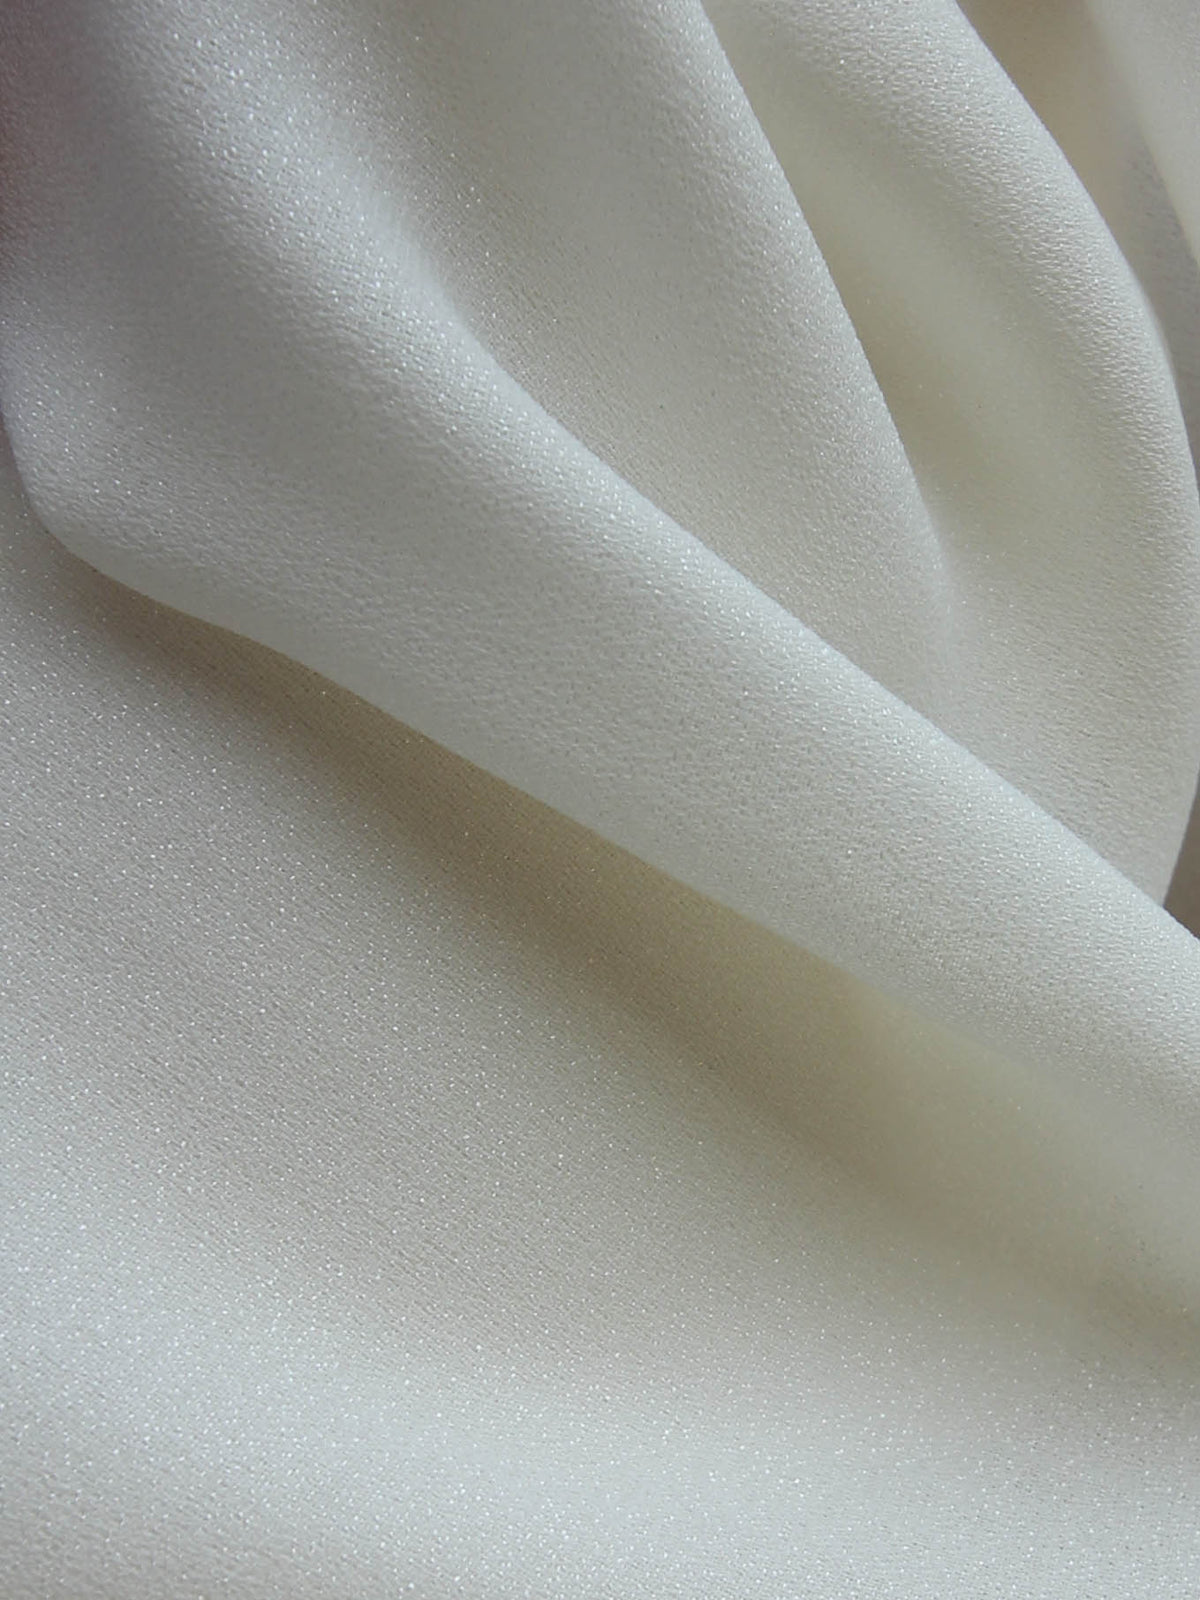 Plain Stretch Crepe Fabric at Rs 790/meter in Mumbai